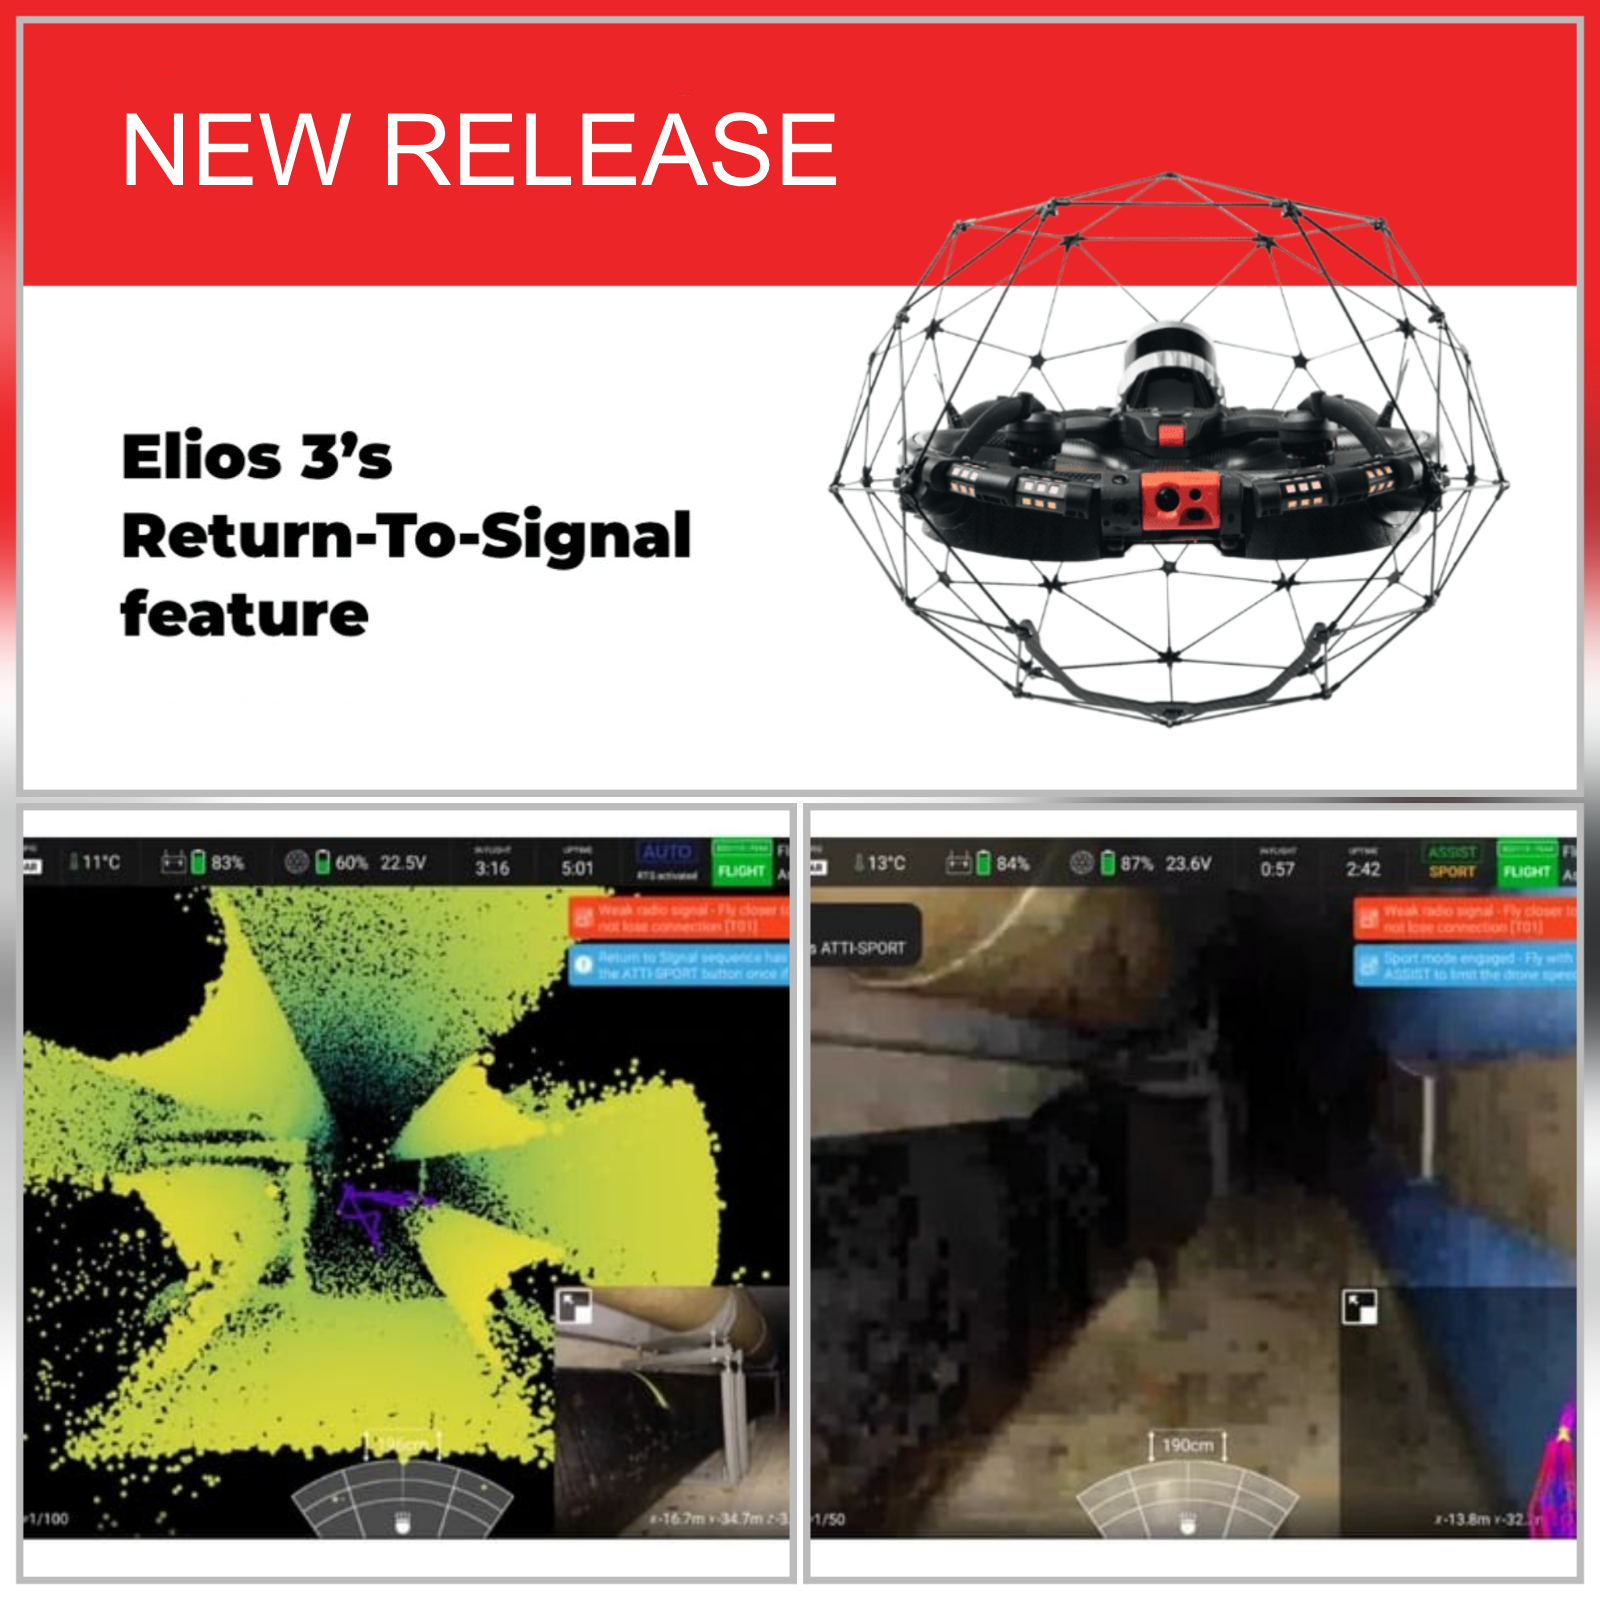 ELIOS 3 Return-To-Signal Feature